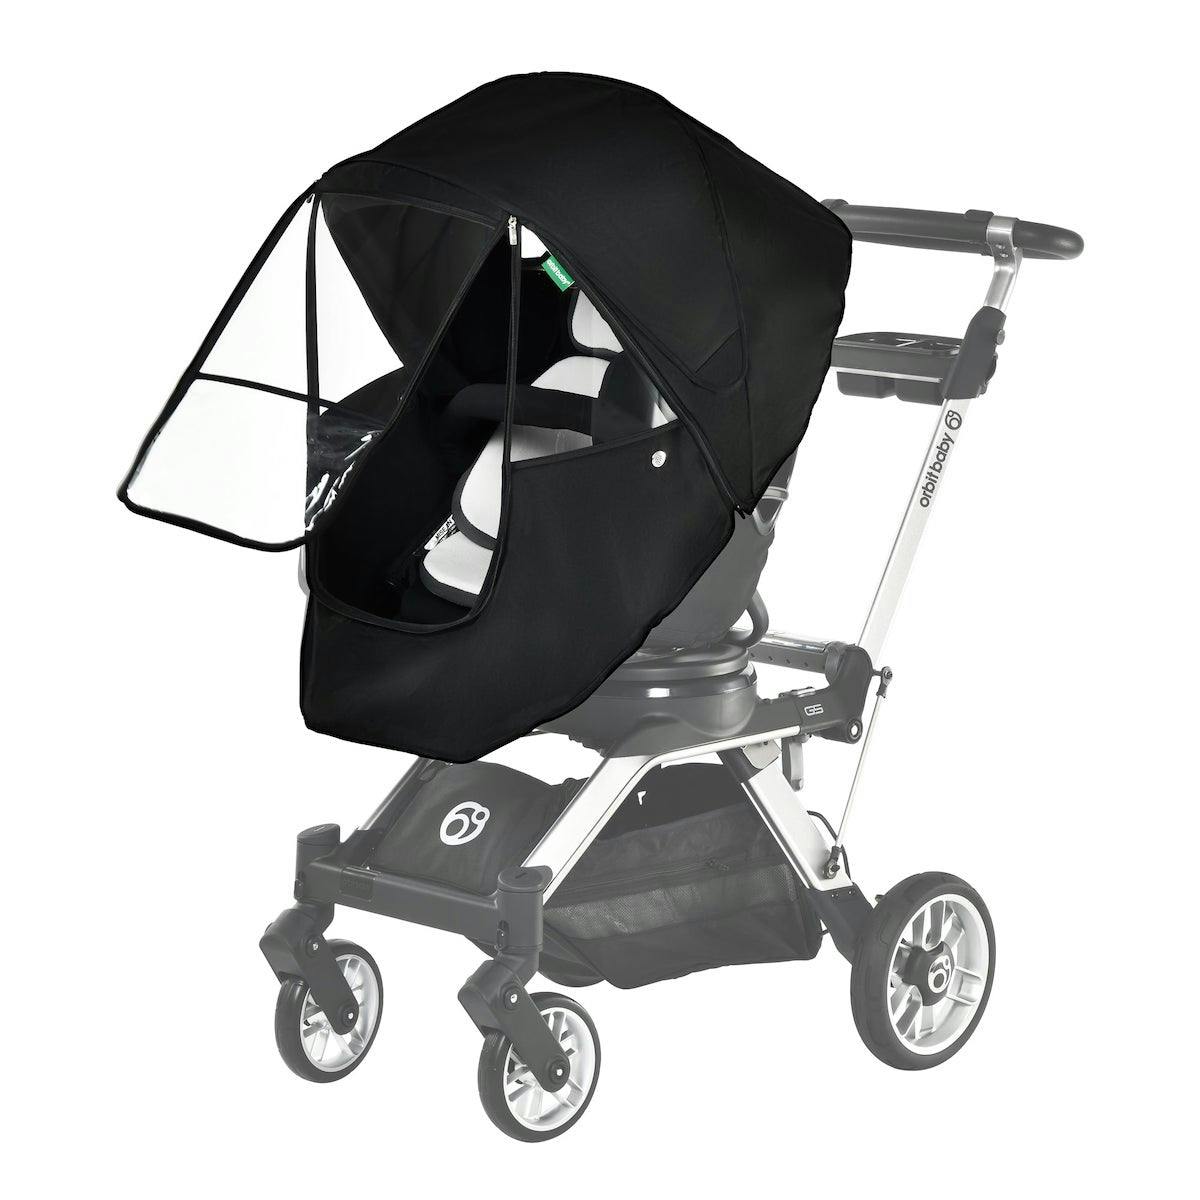 Orbit Baby G5 Stroller Four Seasons Cover  · Melange Grey